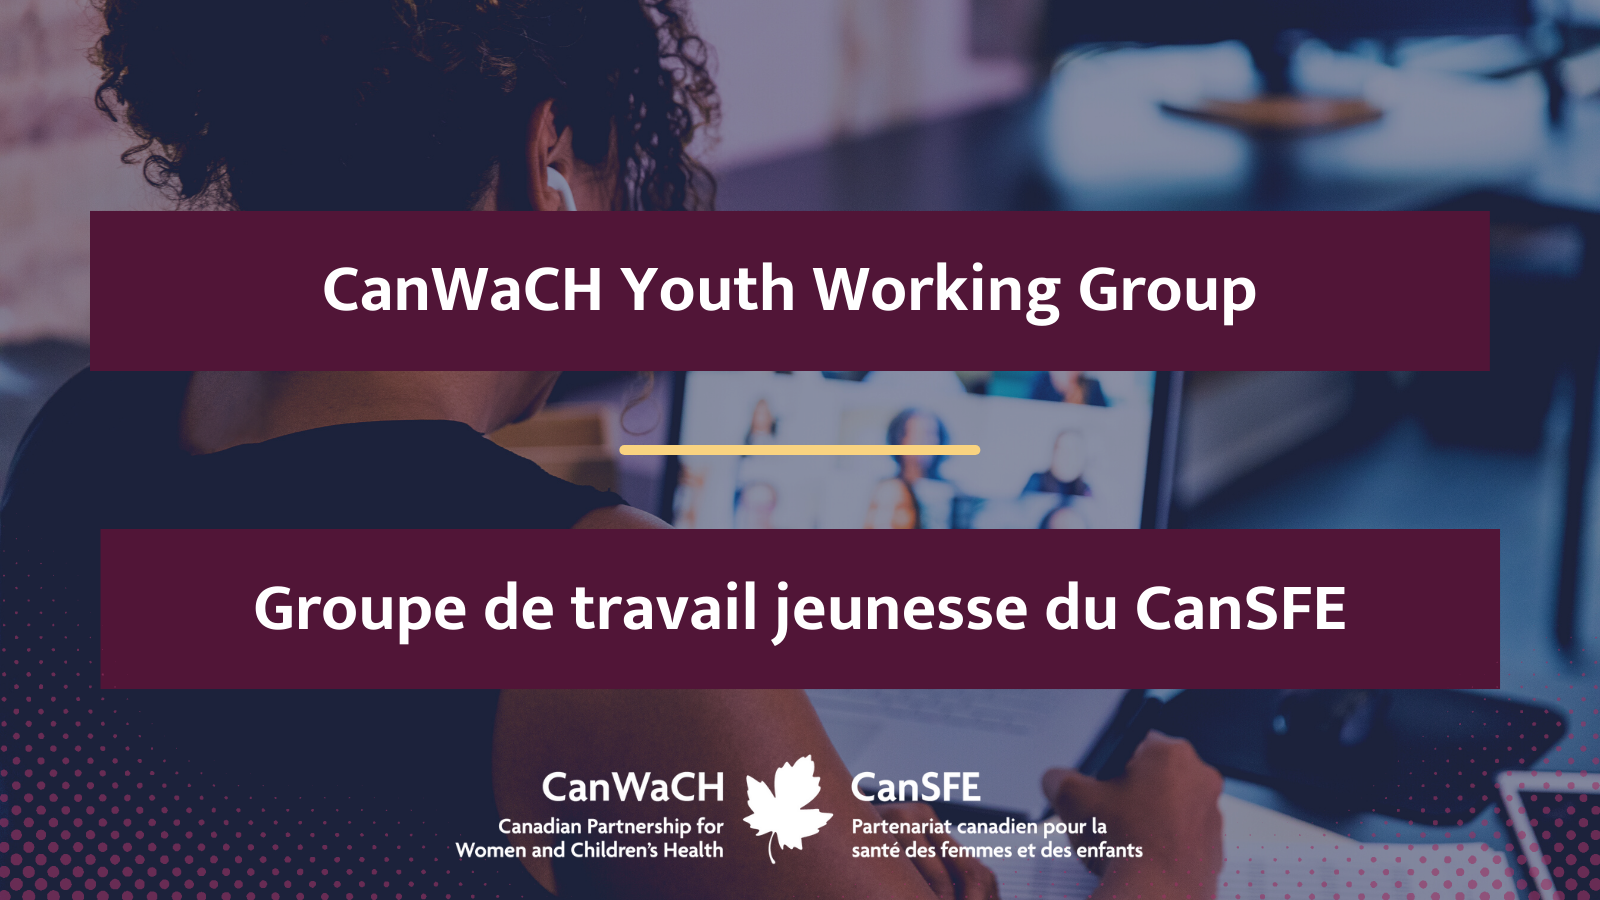 Appel à tous les jeunes! Soumettez votre candidature pour faire partie du NOUVEAU groupe de travail jeunesse du CanSFE